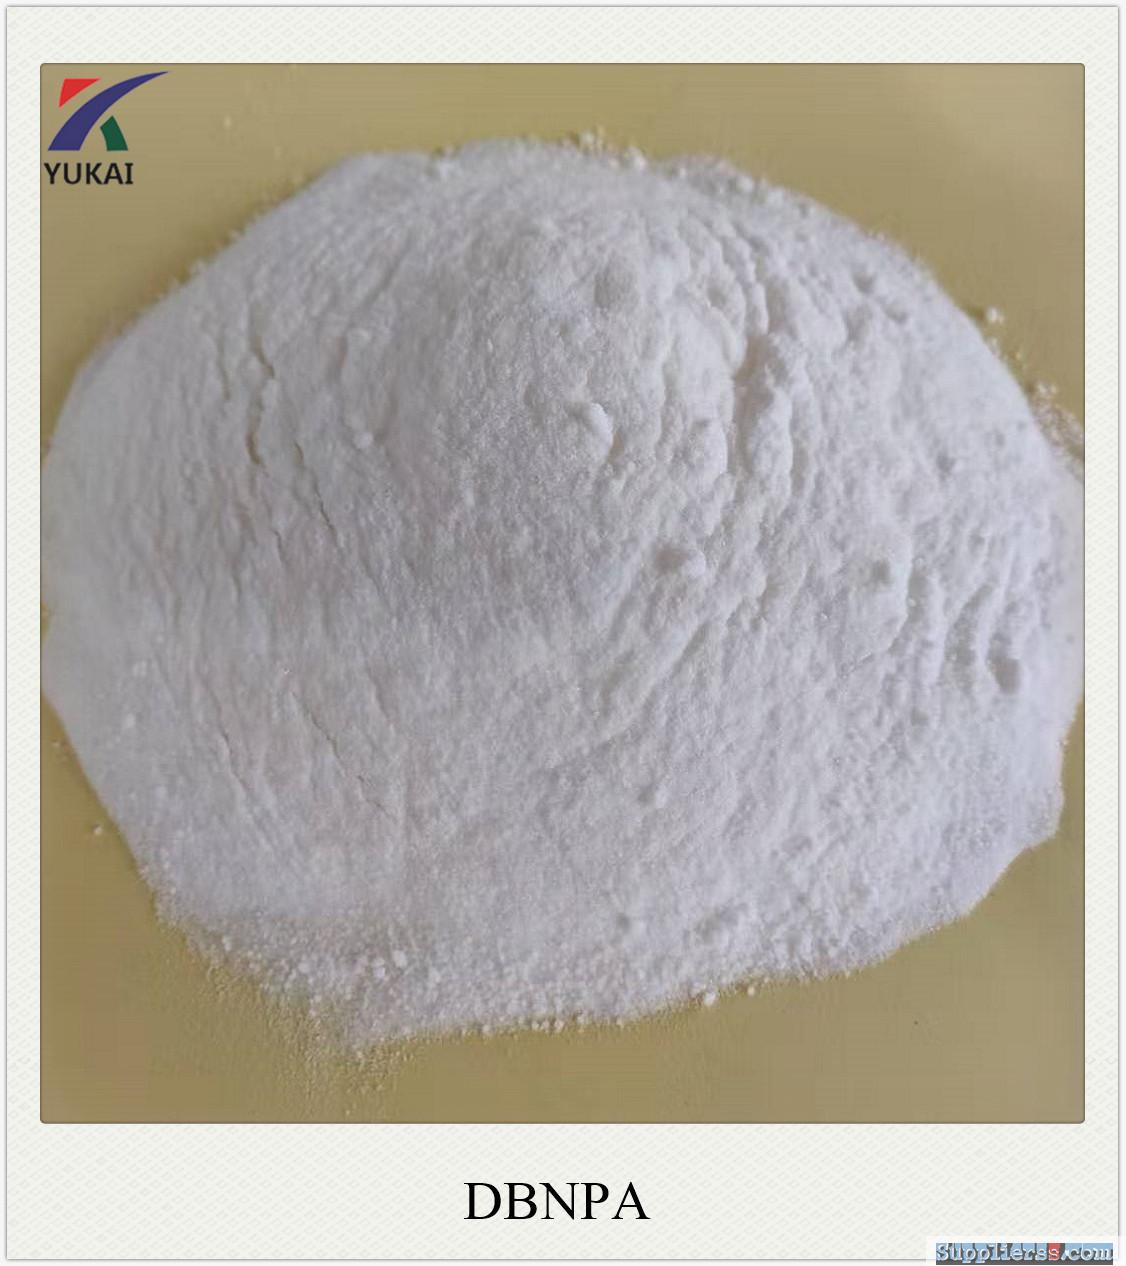 Big discount 2,2-Dibromo-3-Nitrilopropionamide (DBNPA) powder CAS 10222-01-2